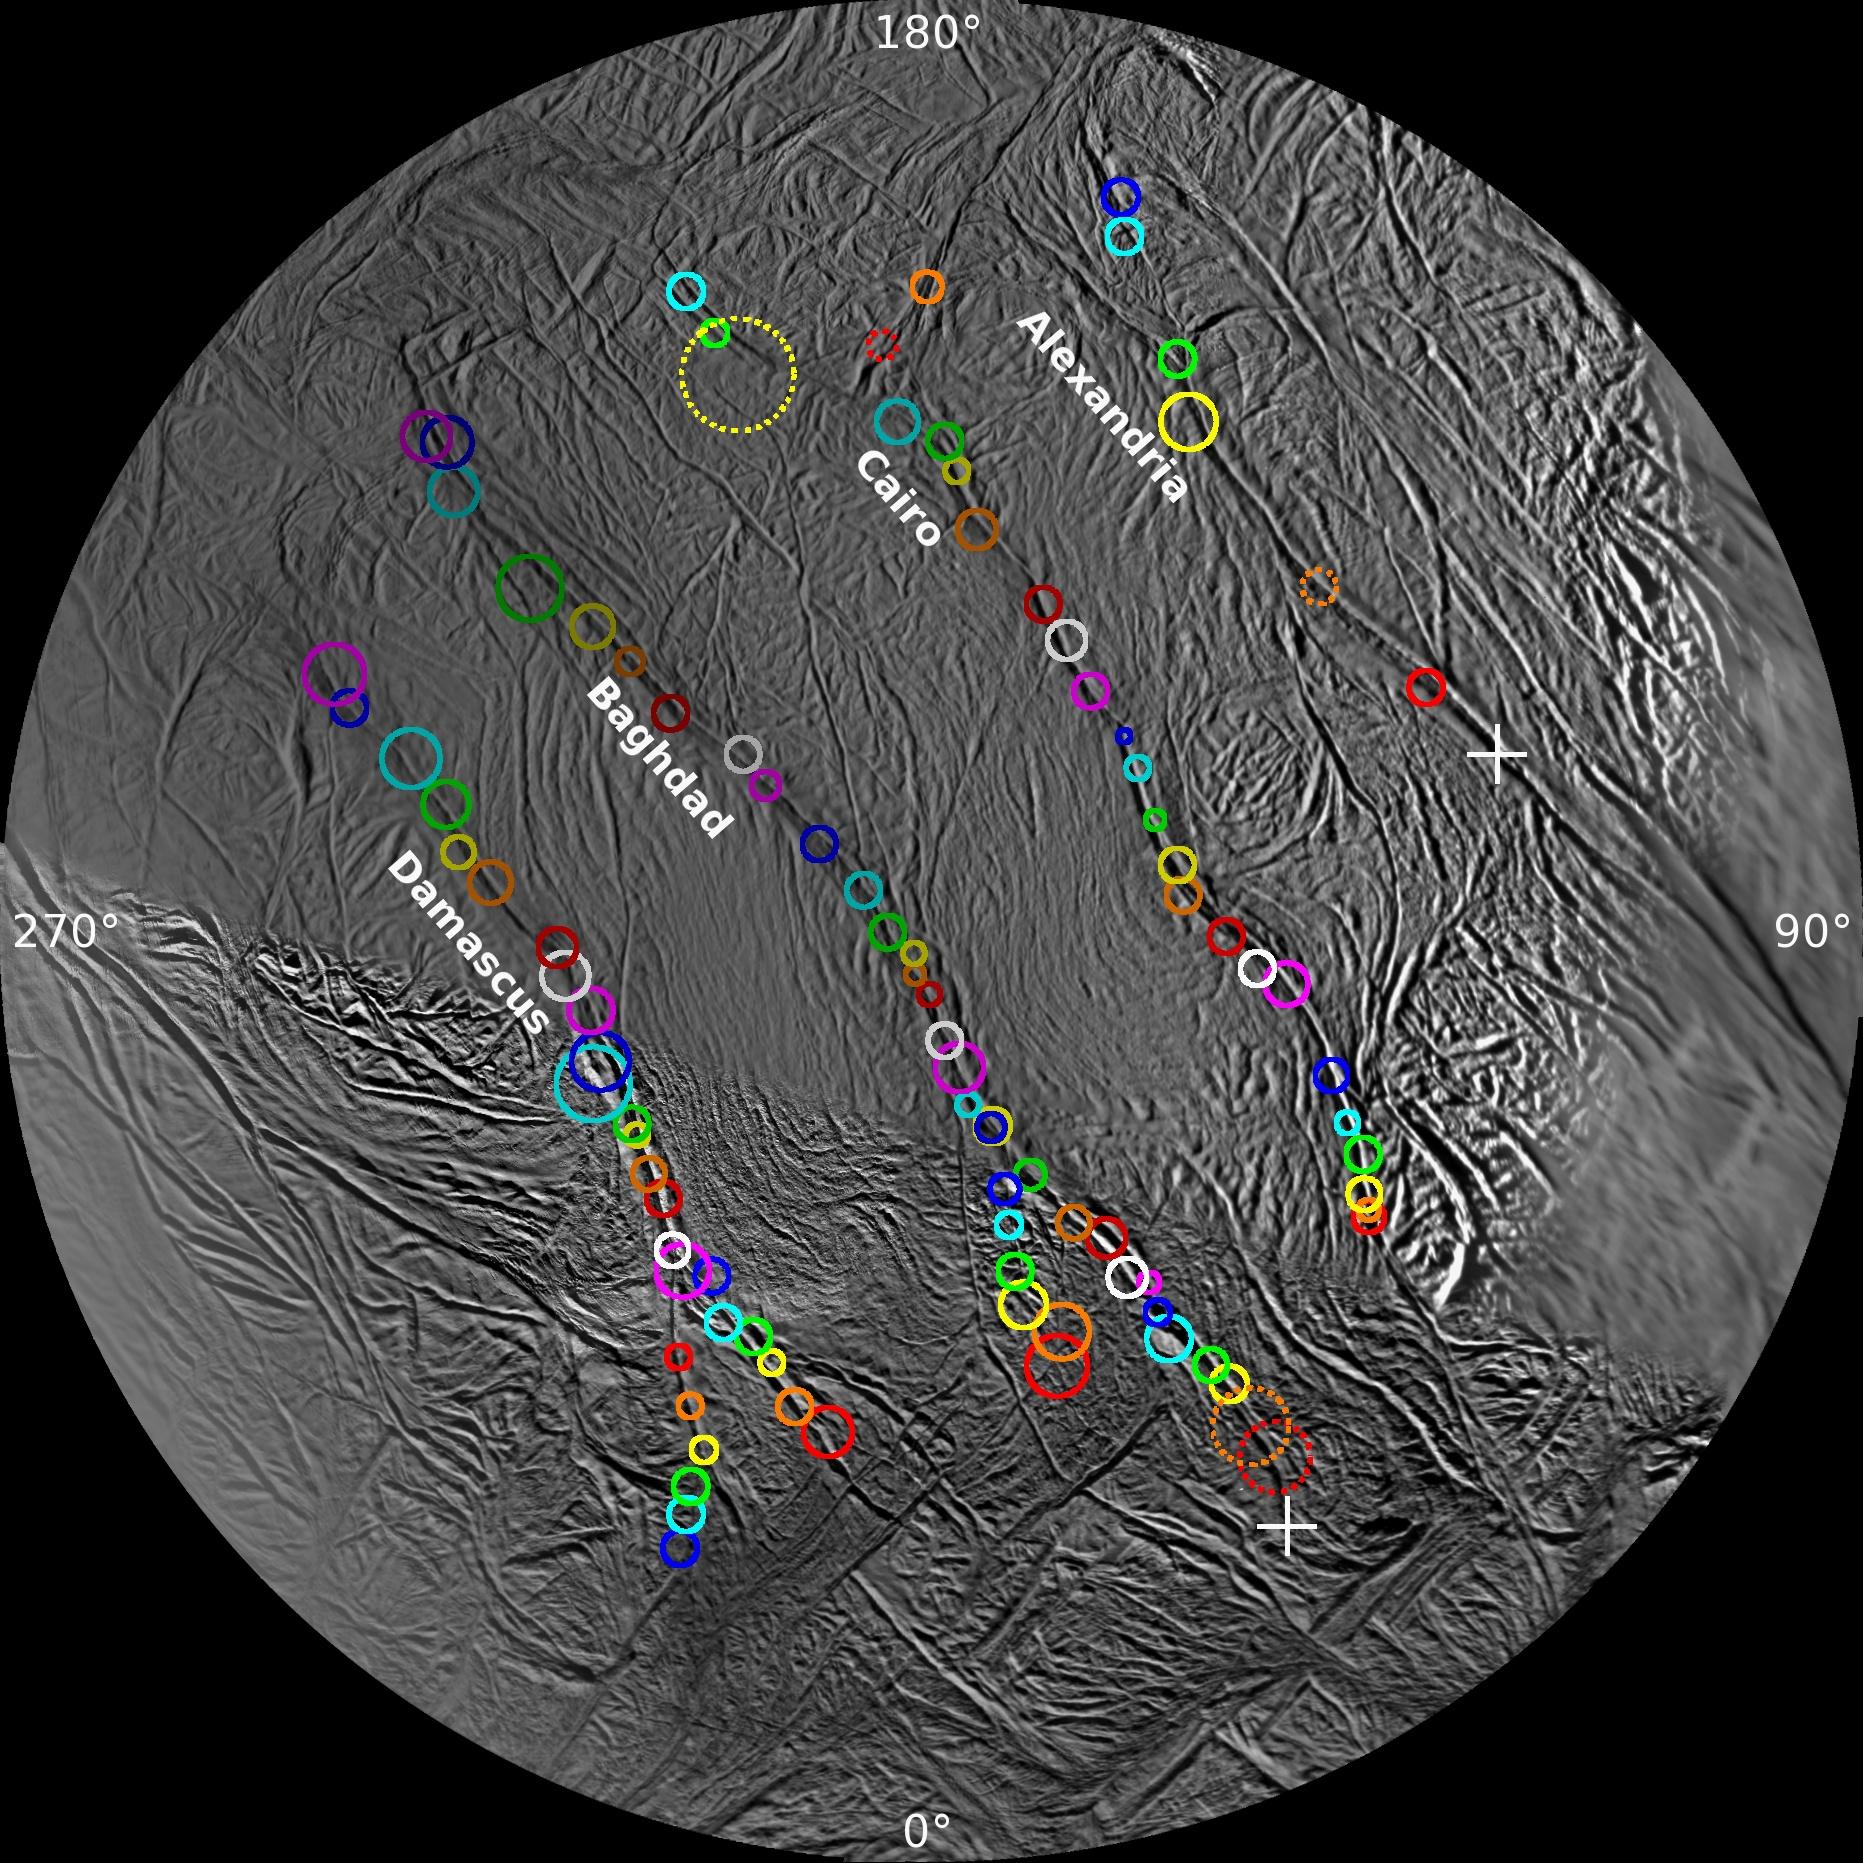 Surveyor's Map of Enceladus' Geyser Basin